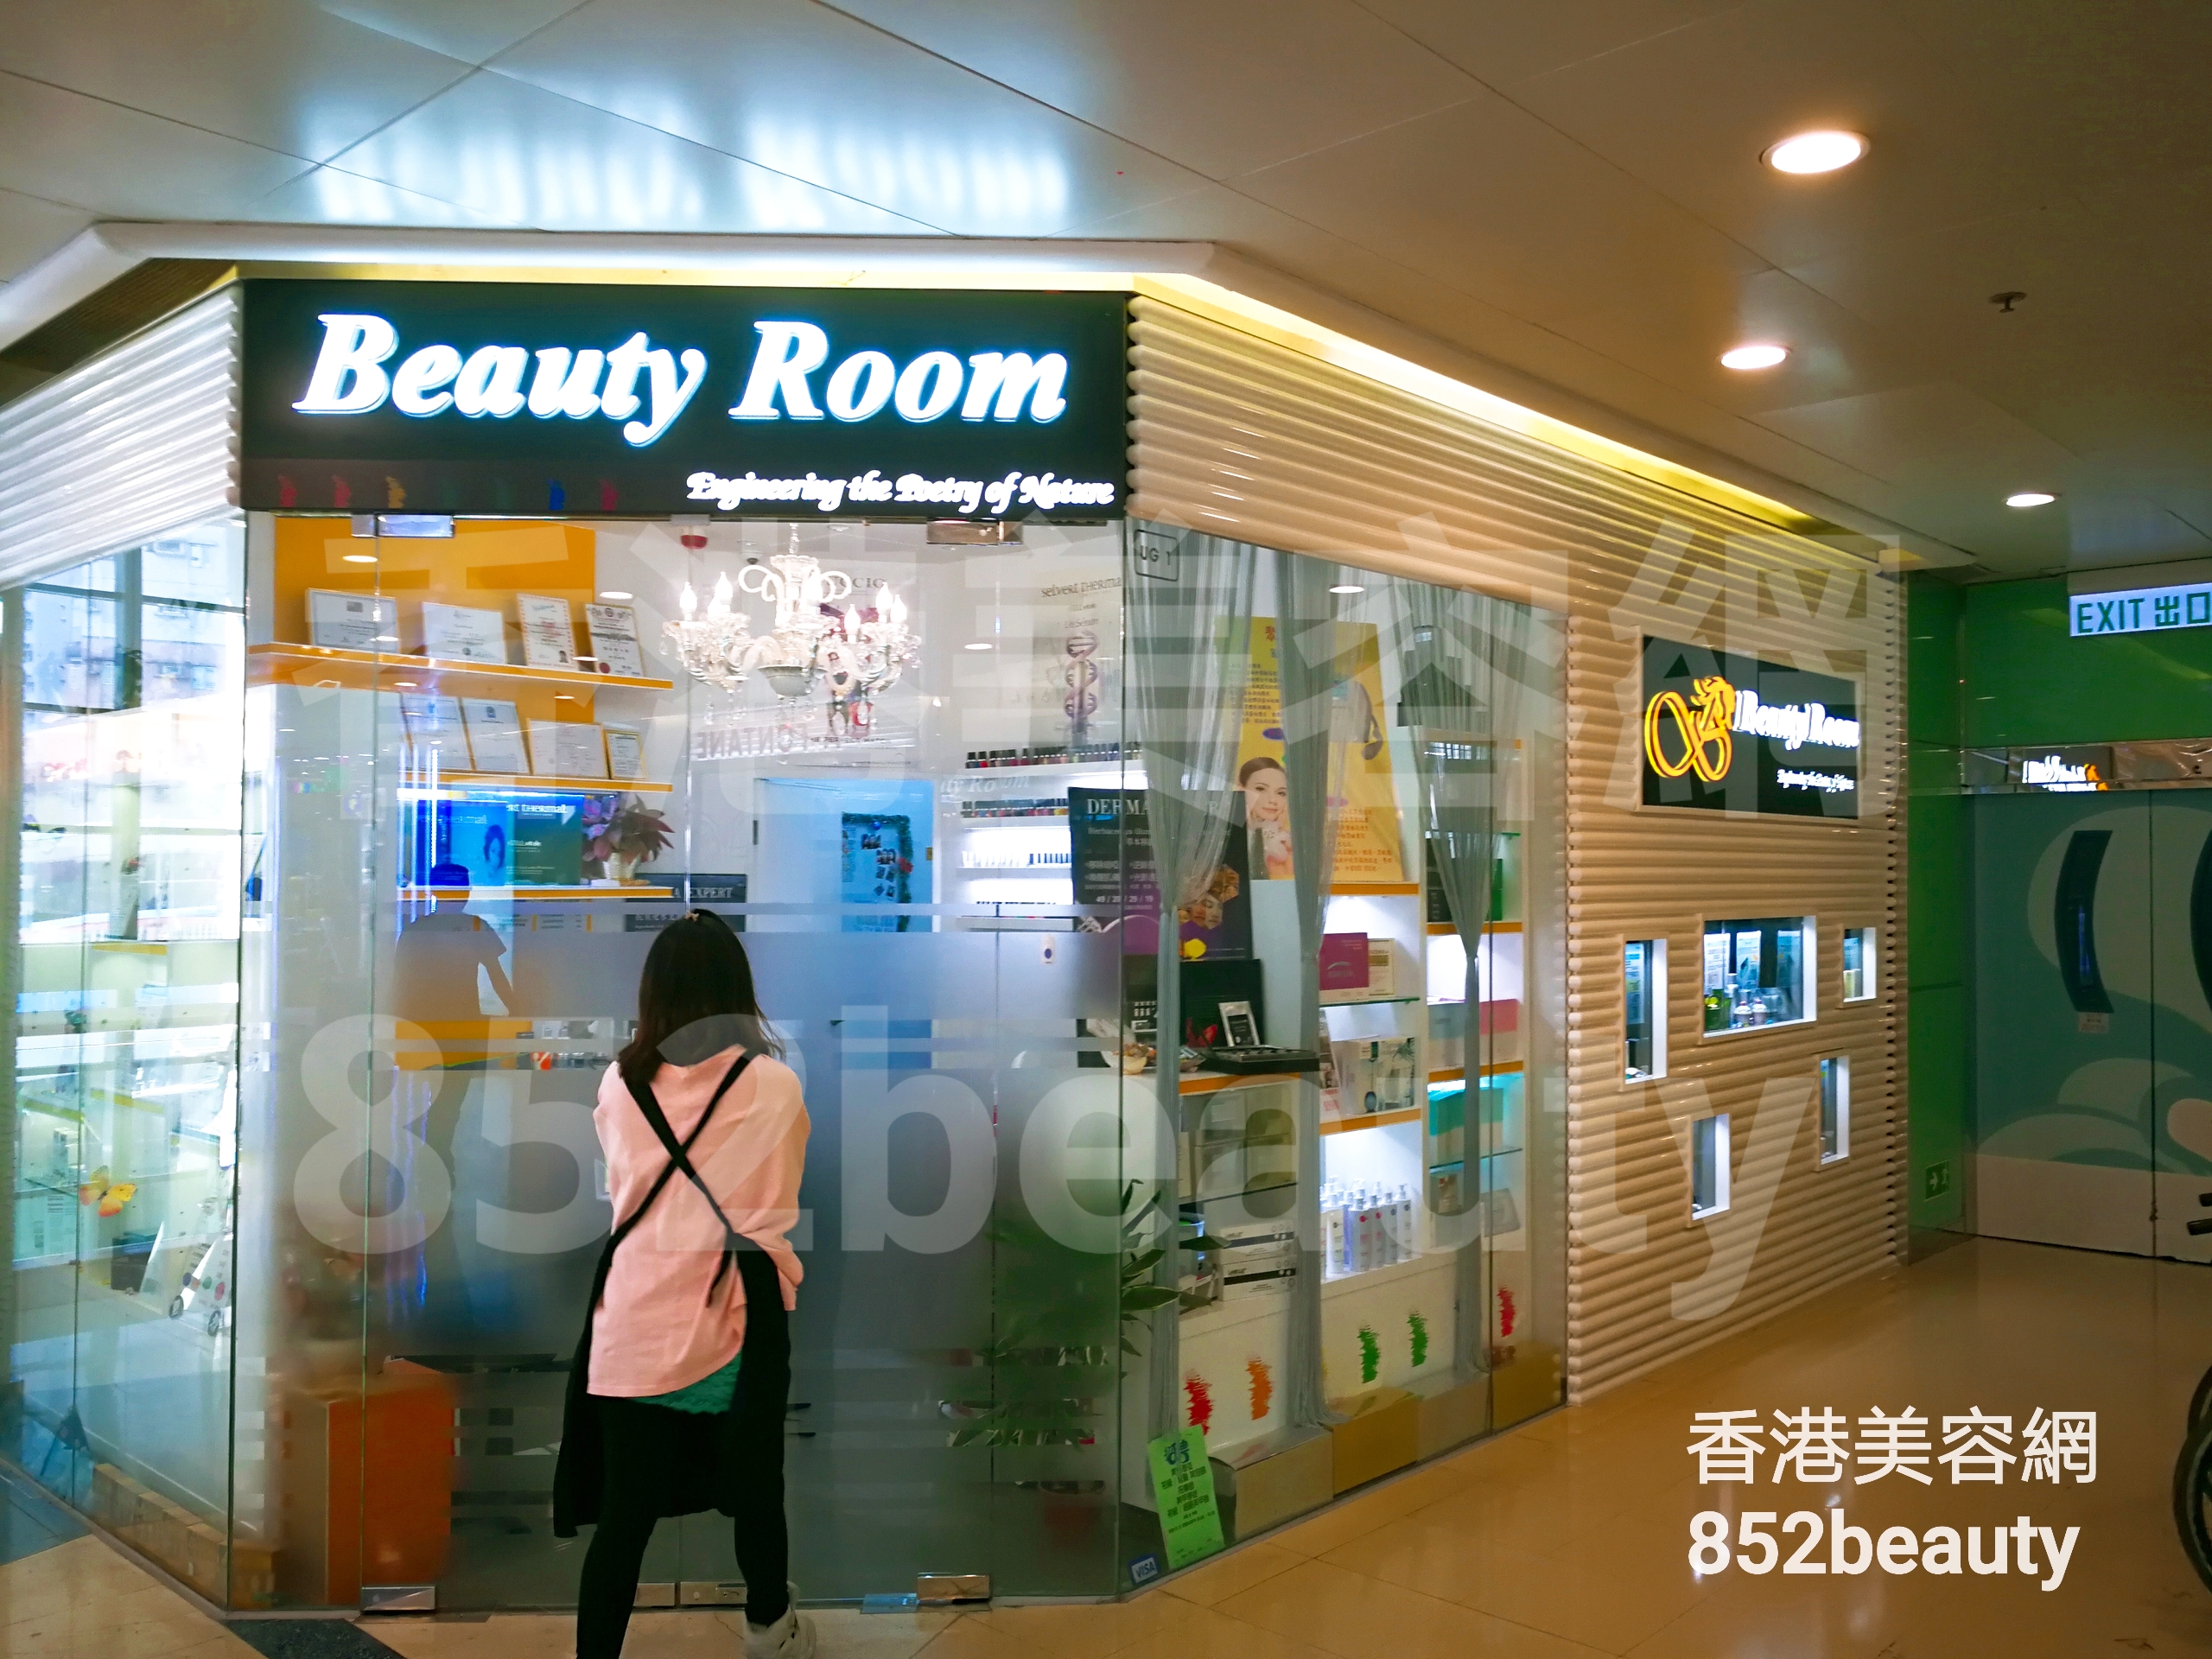 美容院: Beauty Room